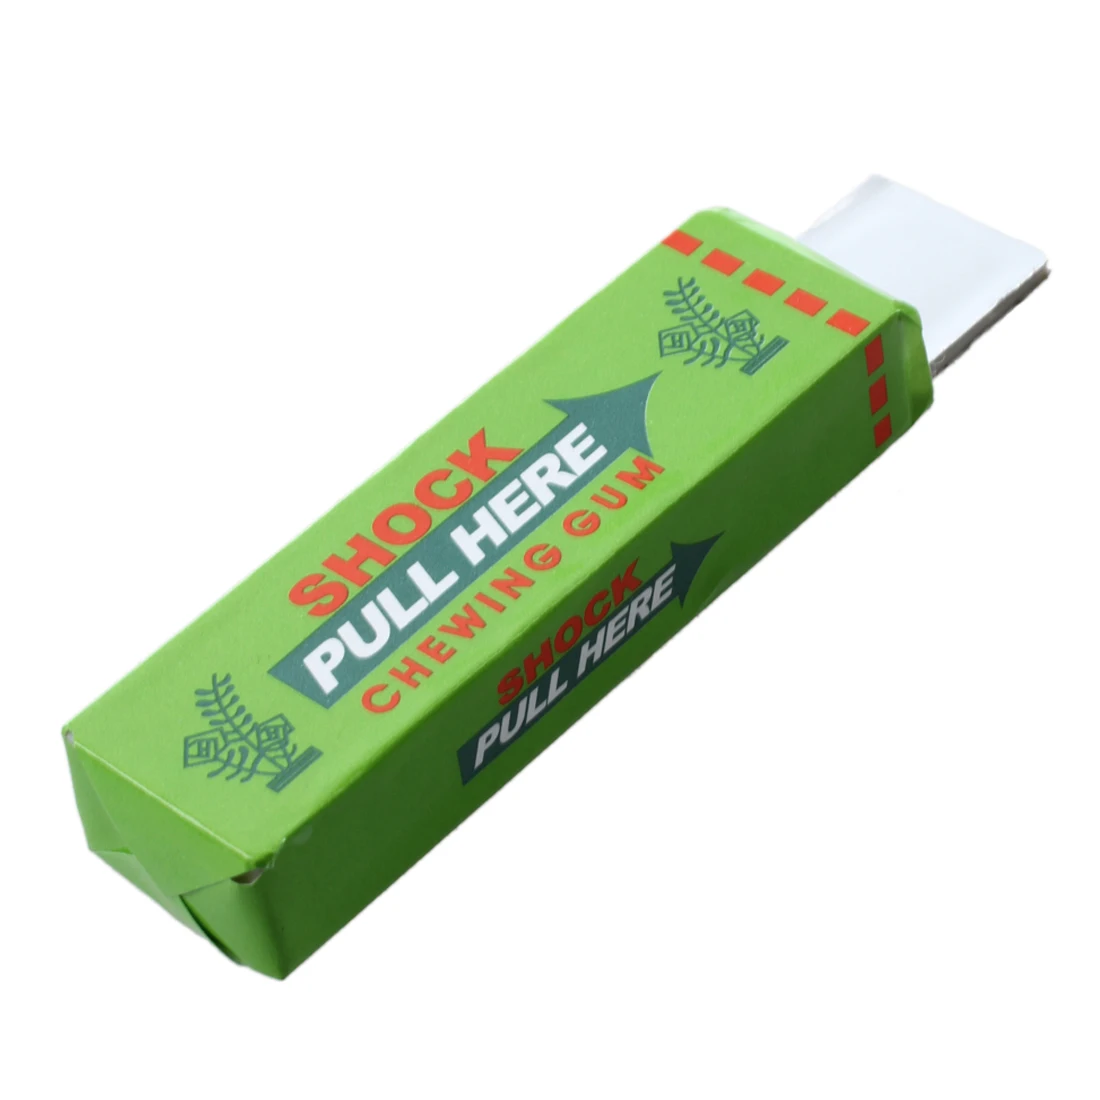 model aleatoire Chewing-gum decharge electrique farce et attrape